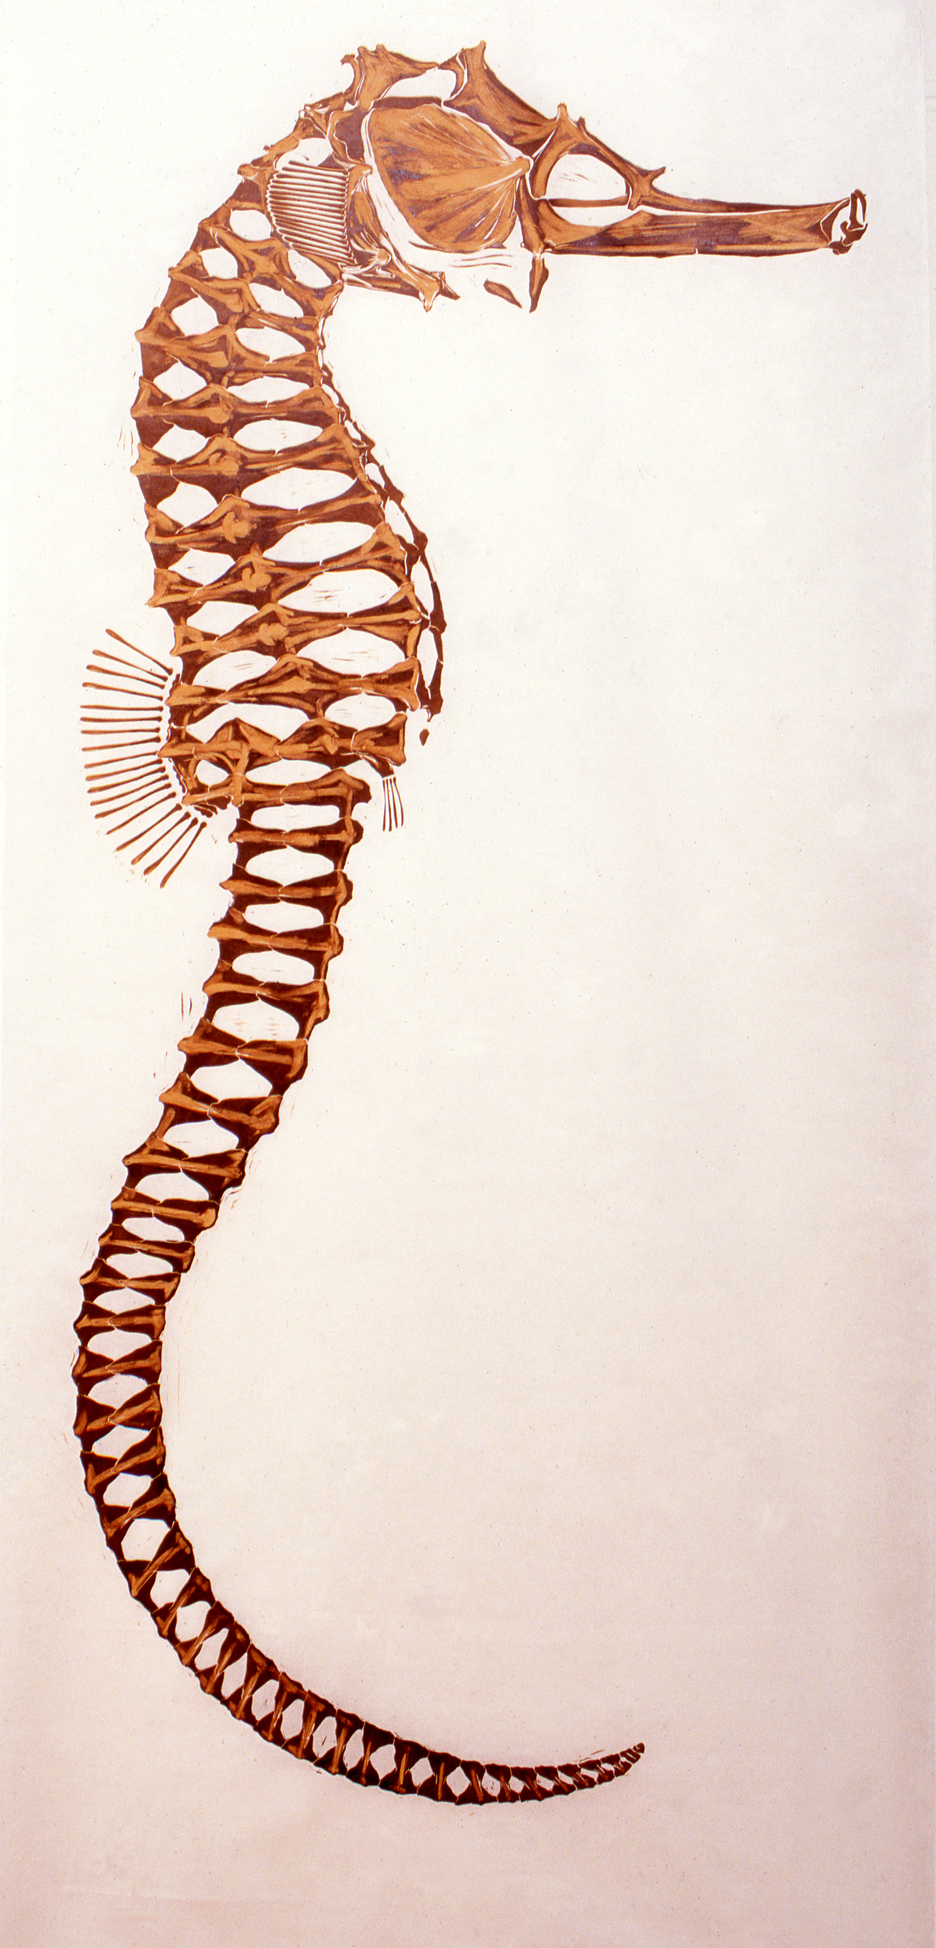 Seahorse — Natural History Artist